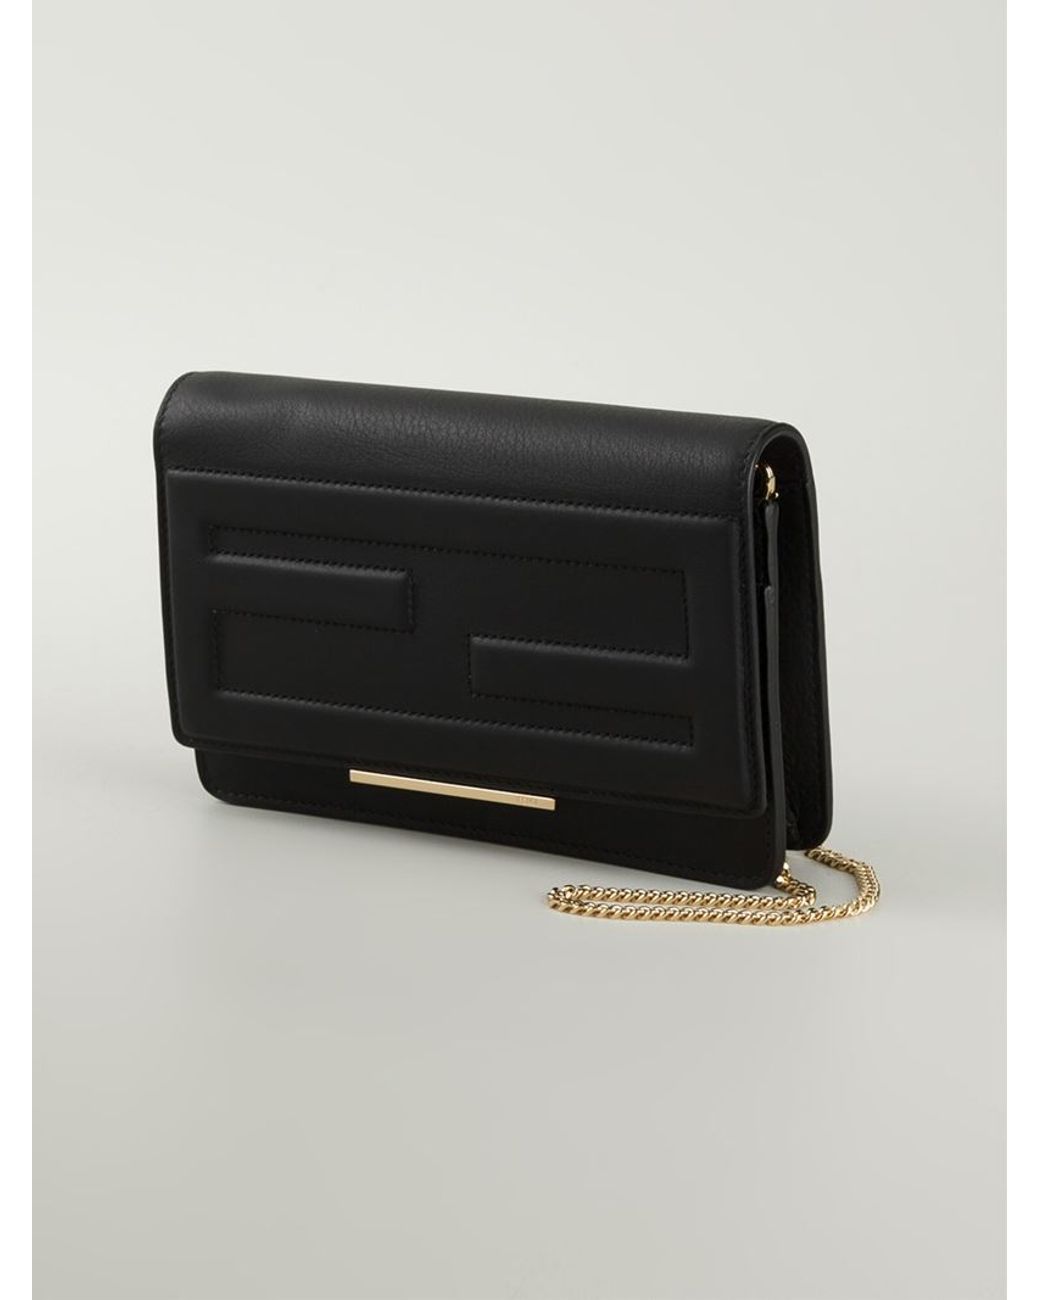 Fendi Wallet on Chain - Black Wallets, Accessories - FEN25423